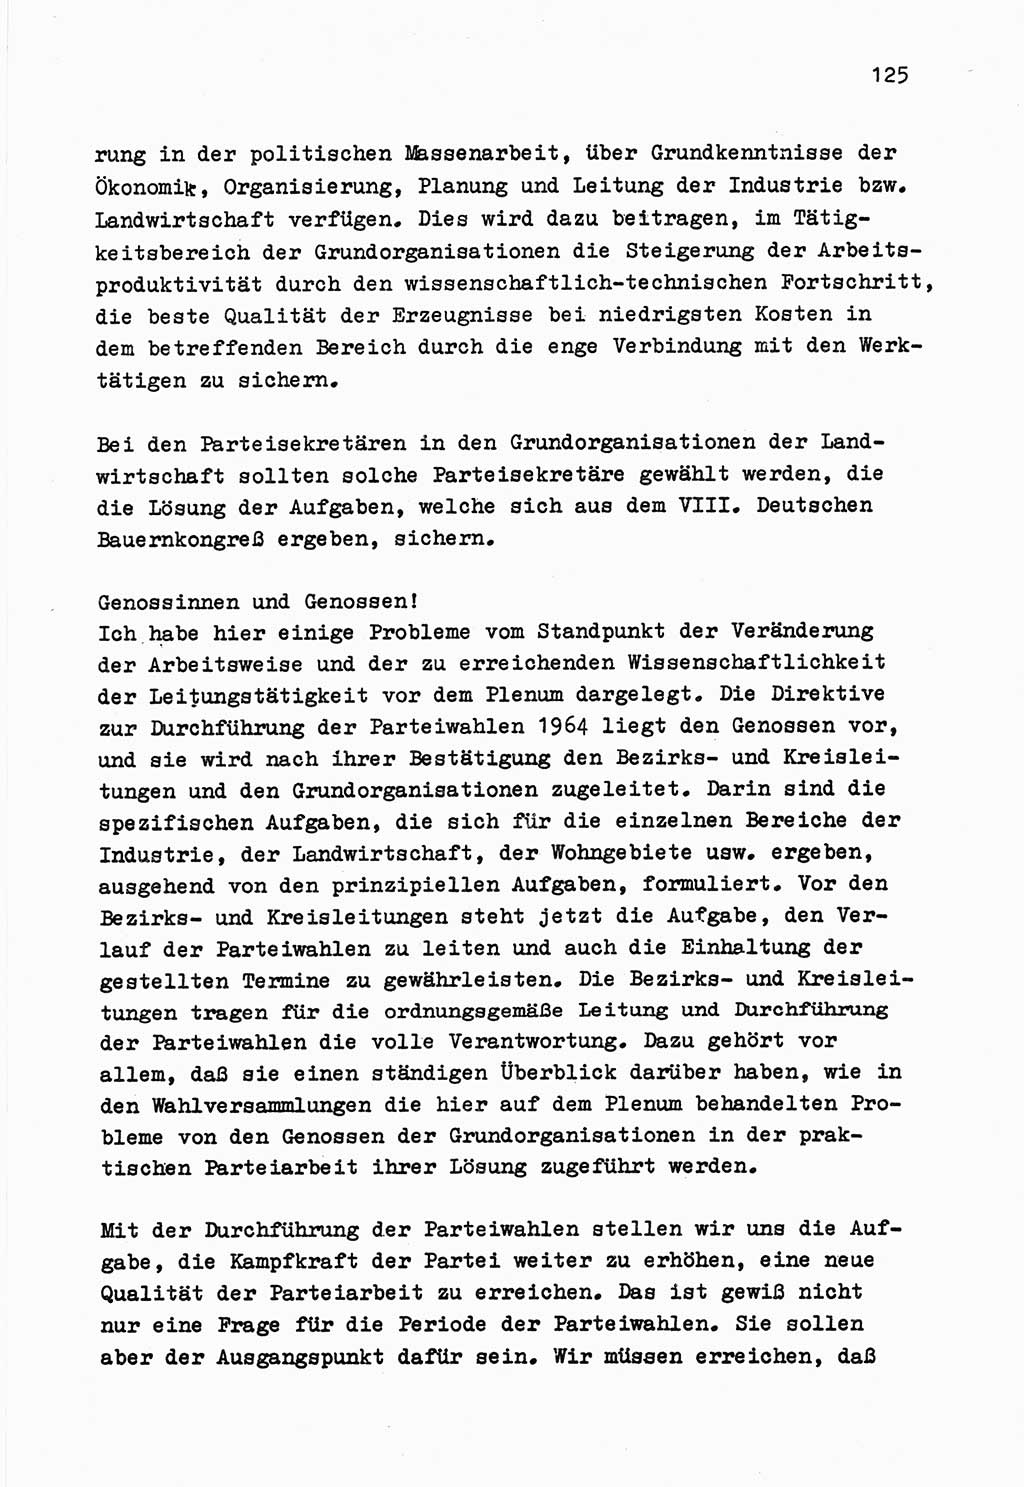 Zu Fragen der Parteiarbeit [Sozialistische Einheitspartei Deutschlands (SED) Deutsche Demokratische Republik (DDR)] 1979, Seite 125 (Fr. PA SED DDR 1979, S. 125)